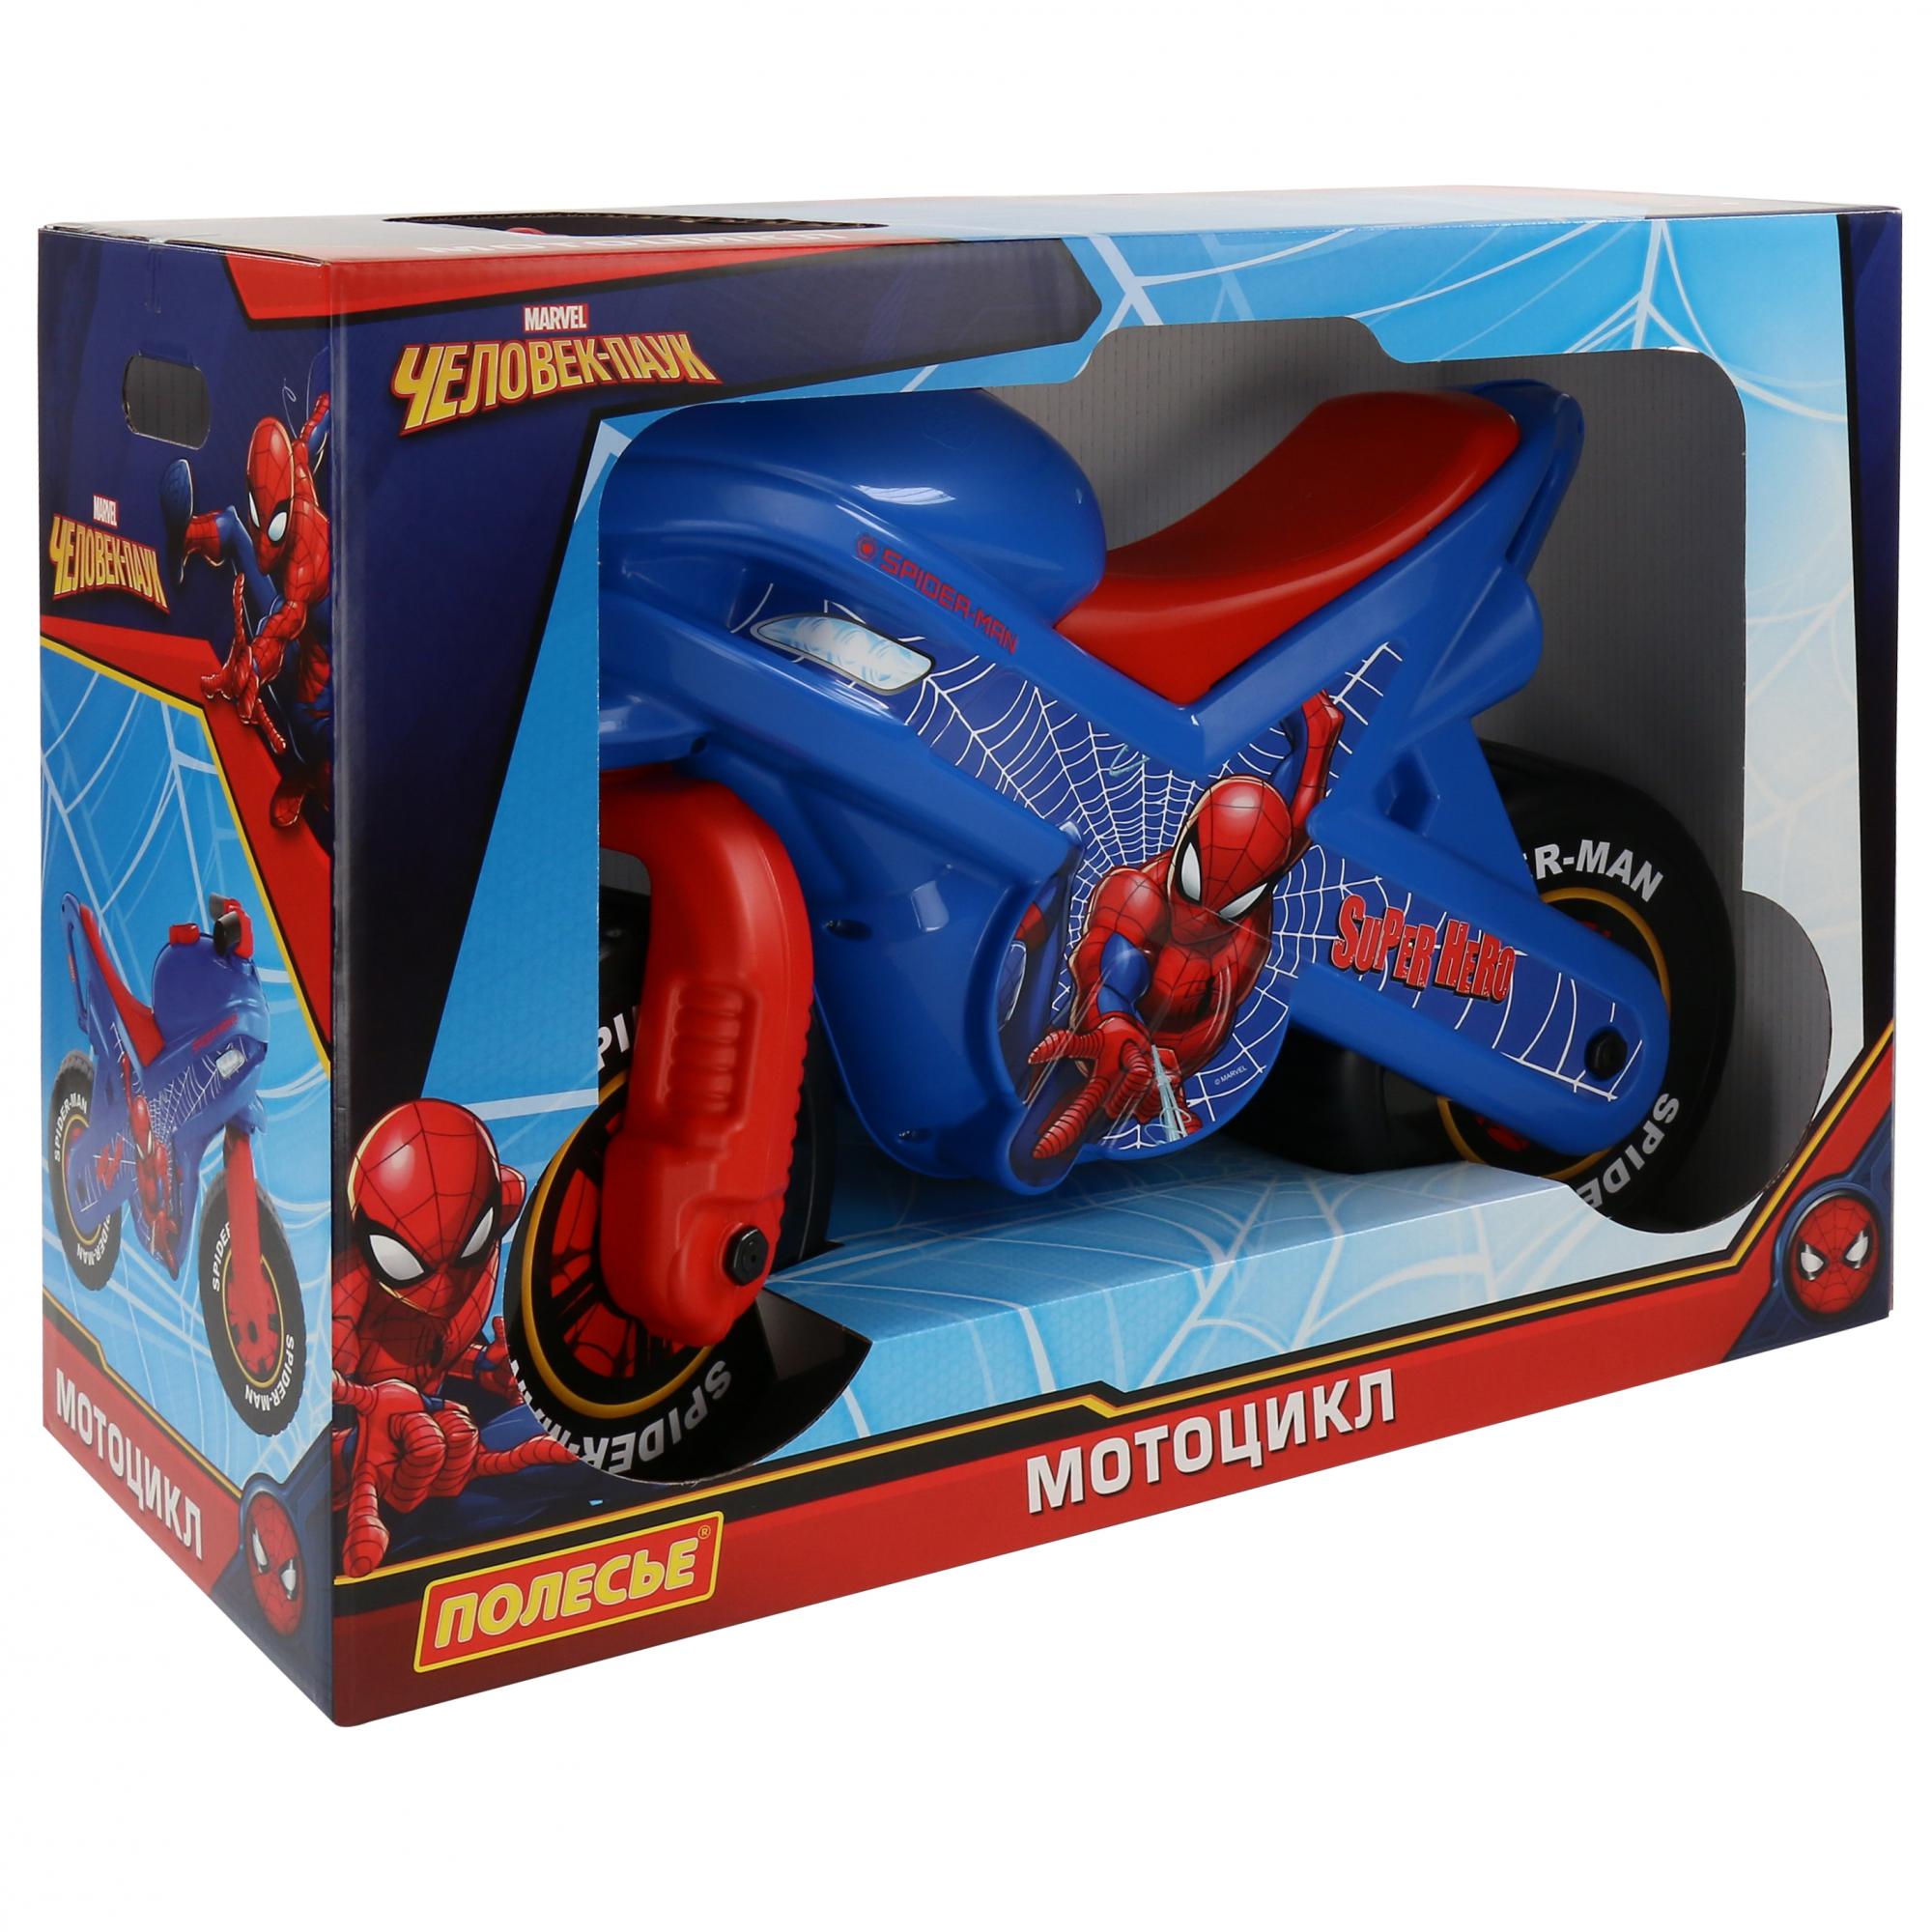 Беговел пластмассовый Marvel Человек-паук подарочный